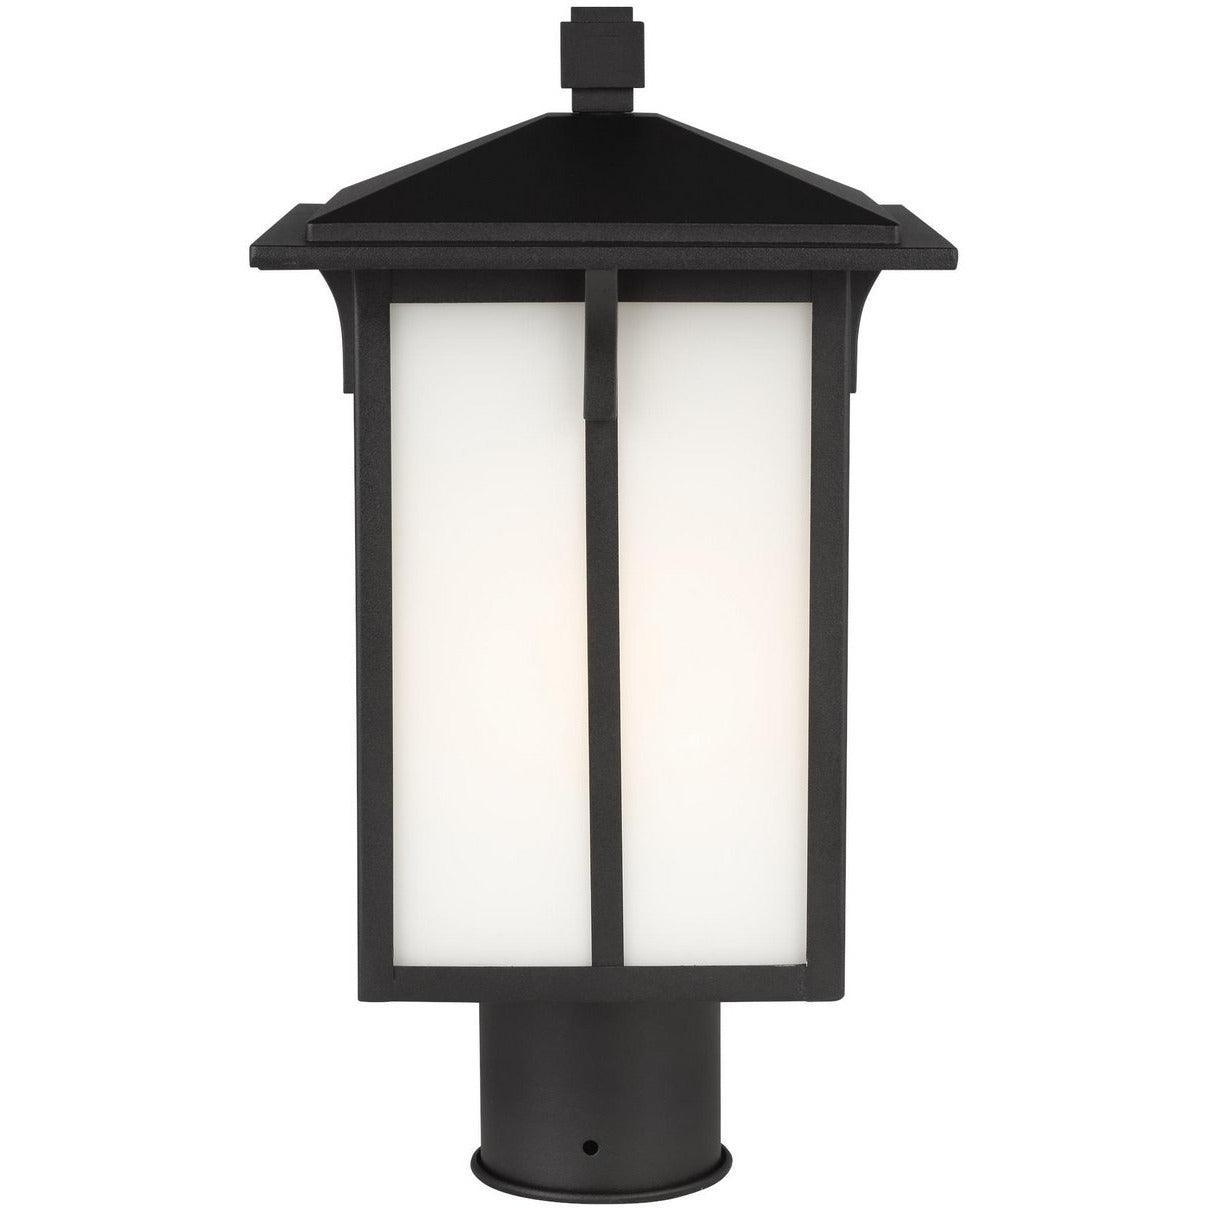 Generation Lighting - Tomek Outdoor Post Lantern - 8252701-12 | Montreal Lighting & Hardware